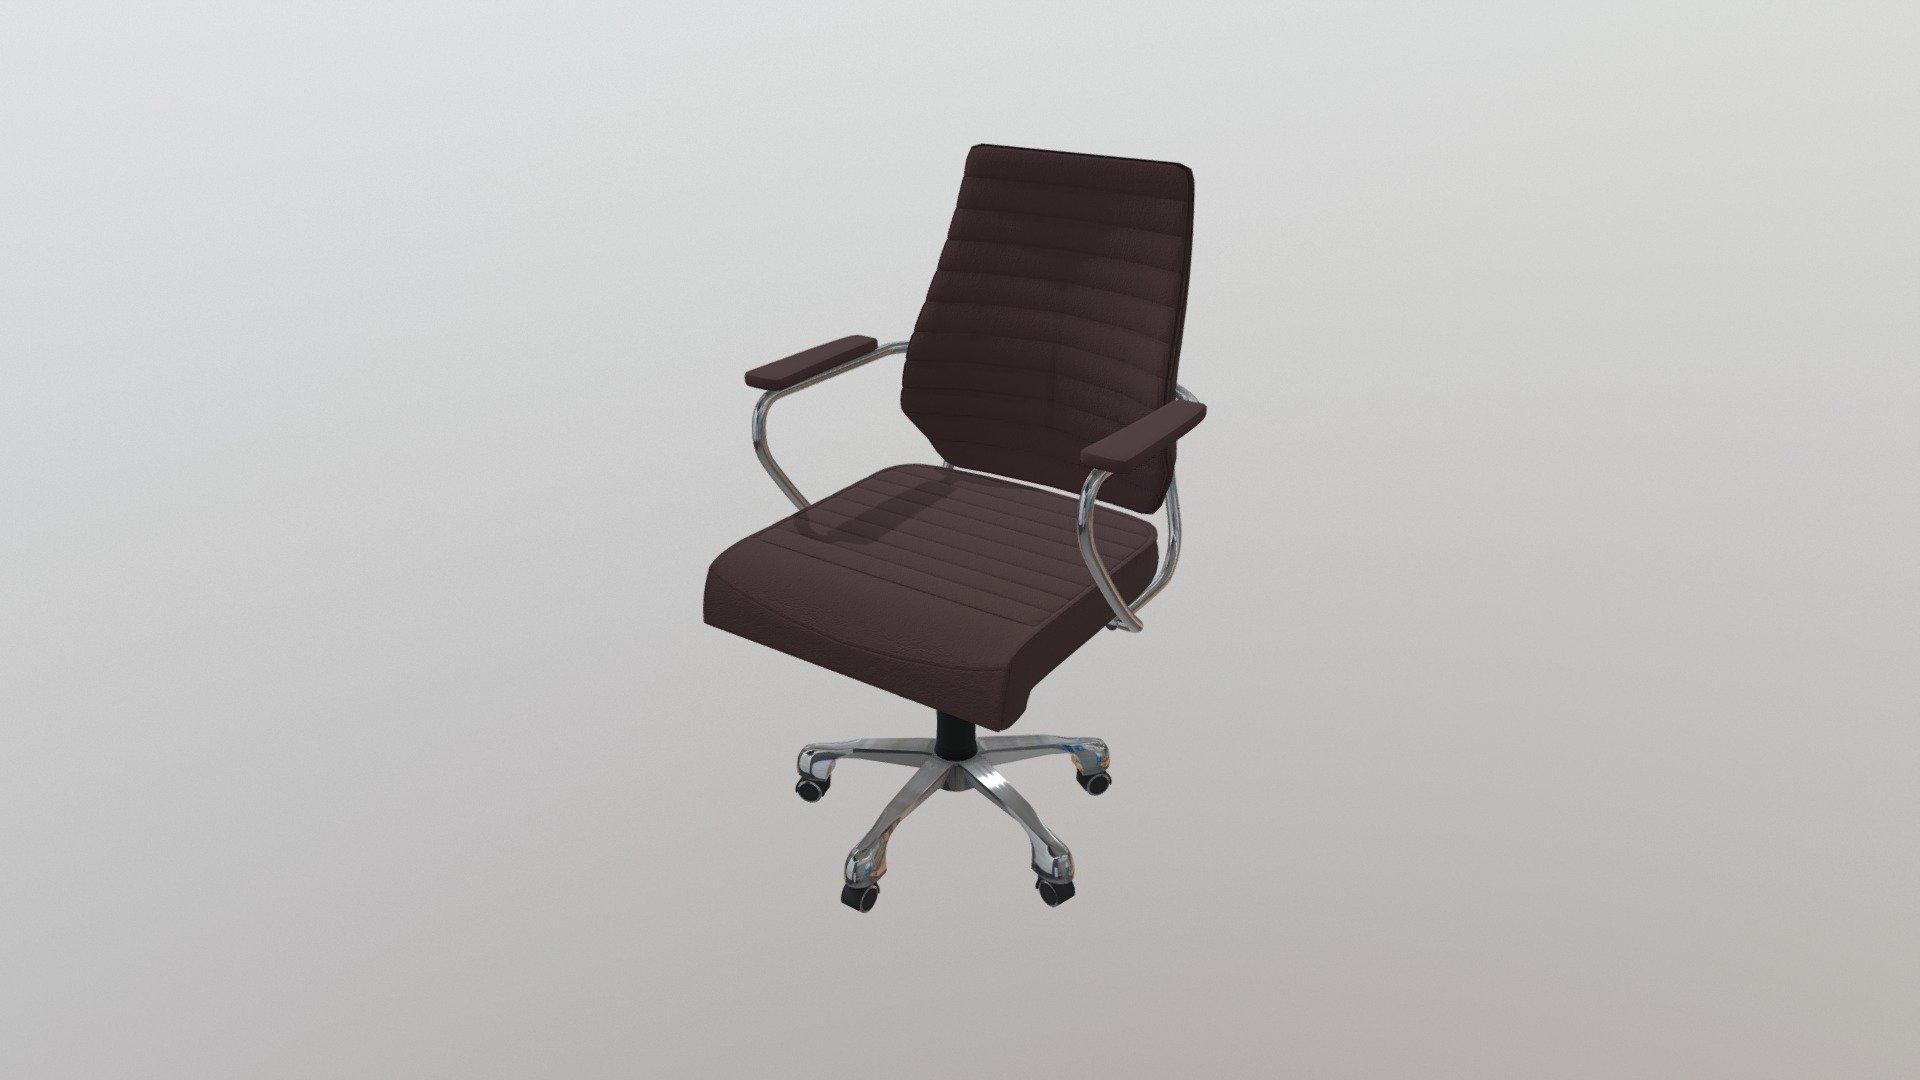 205166 - Enterprise Low Back Office Chair Espresso